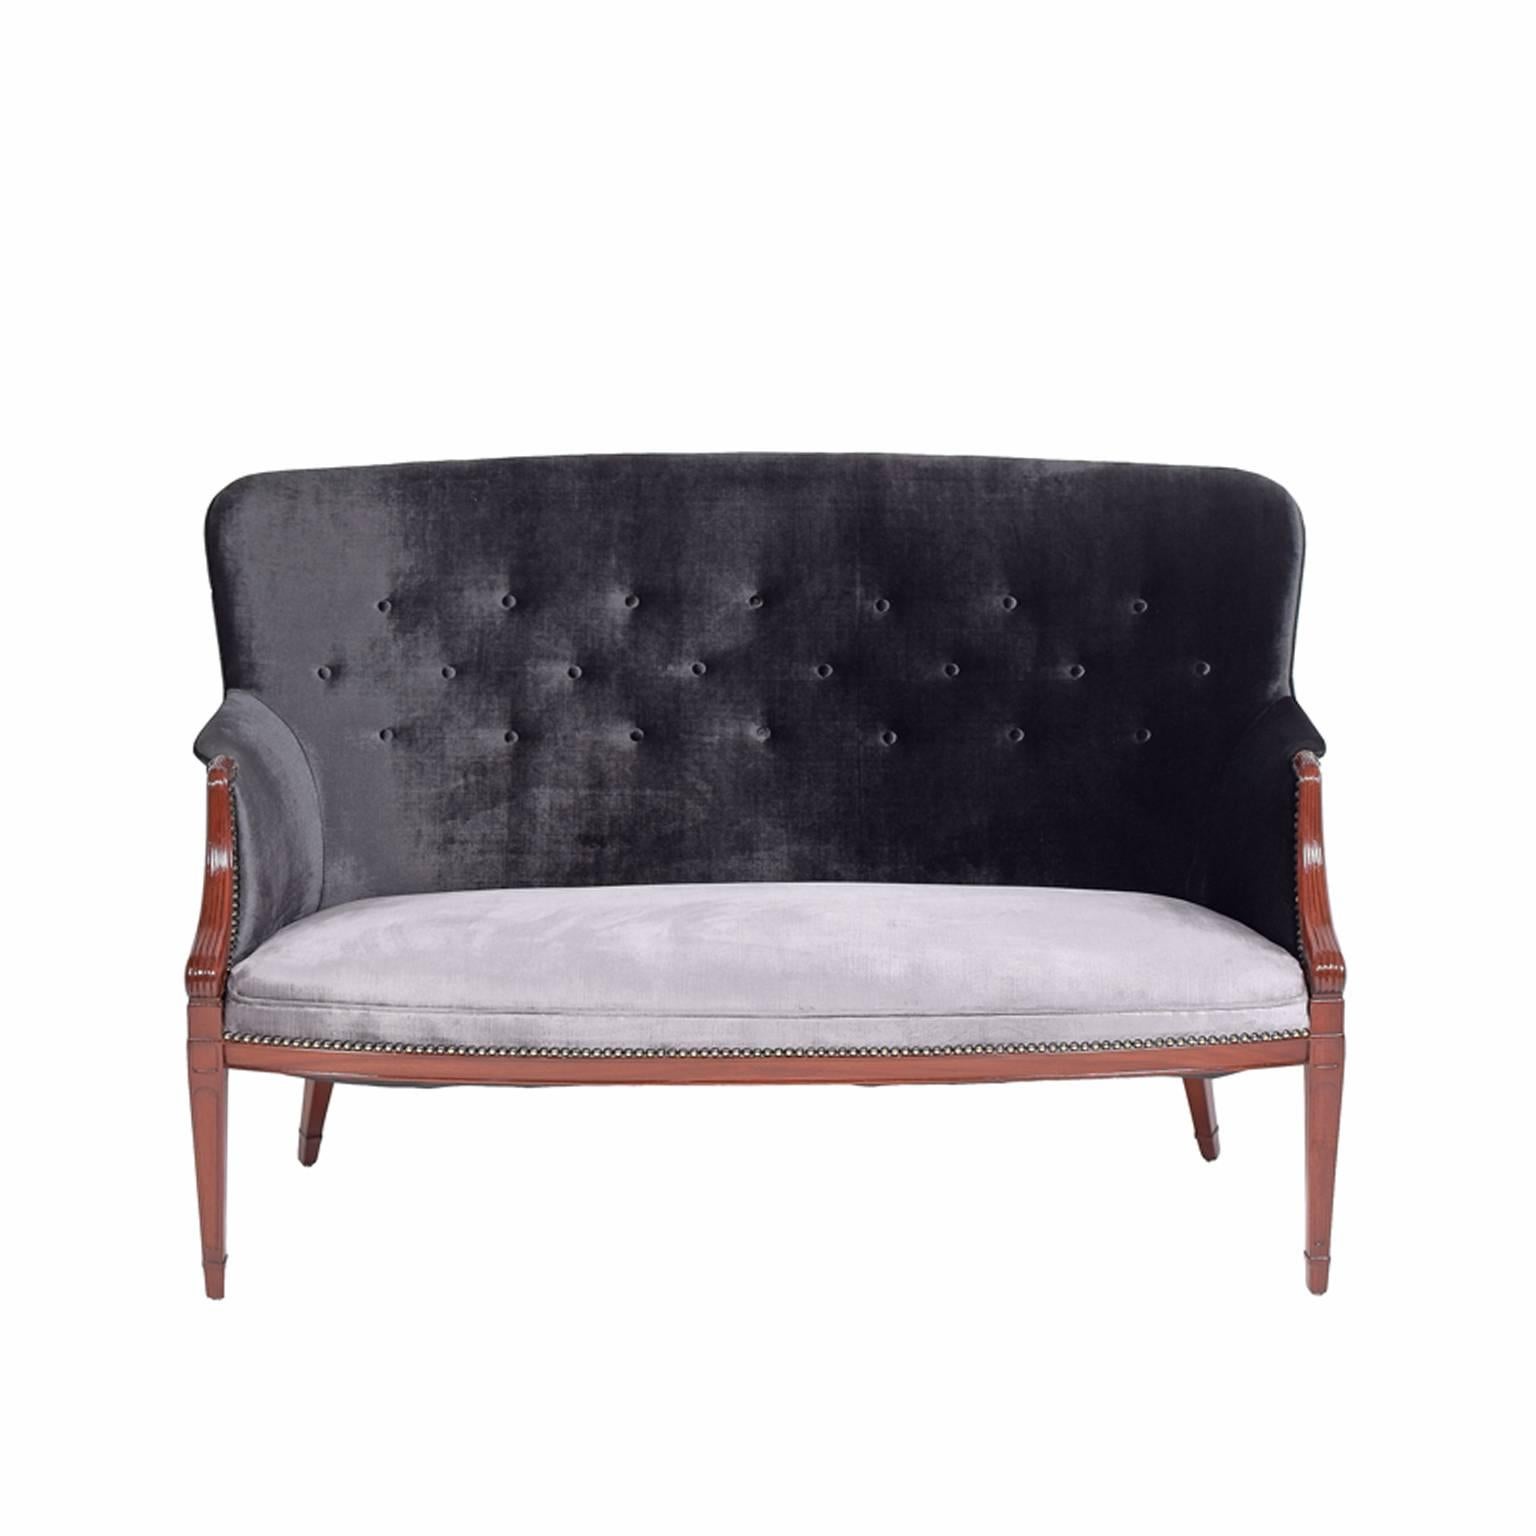 Zweisitziges Sofa aus massivem Mahagoni, entworfen und hergestellt von Frits Henningsen in den 1940er Jahren. Zweifarbige Velourspolsterung mit schwarzem Oberteil und silberner Sitzfläche.